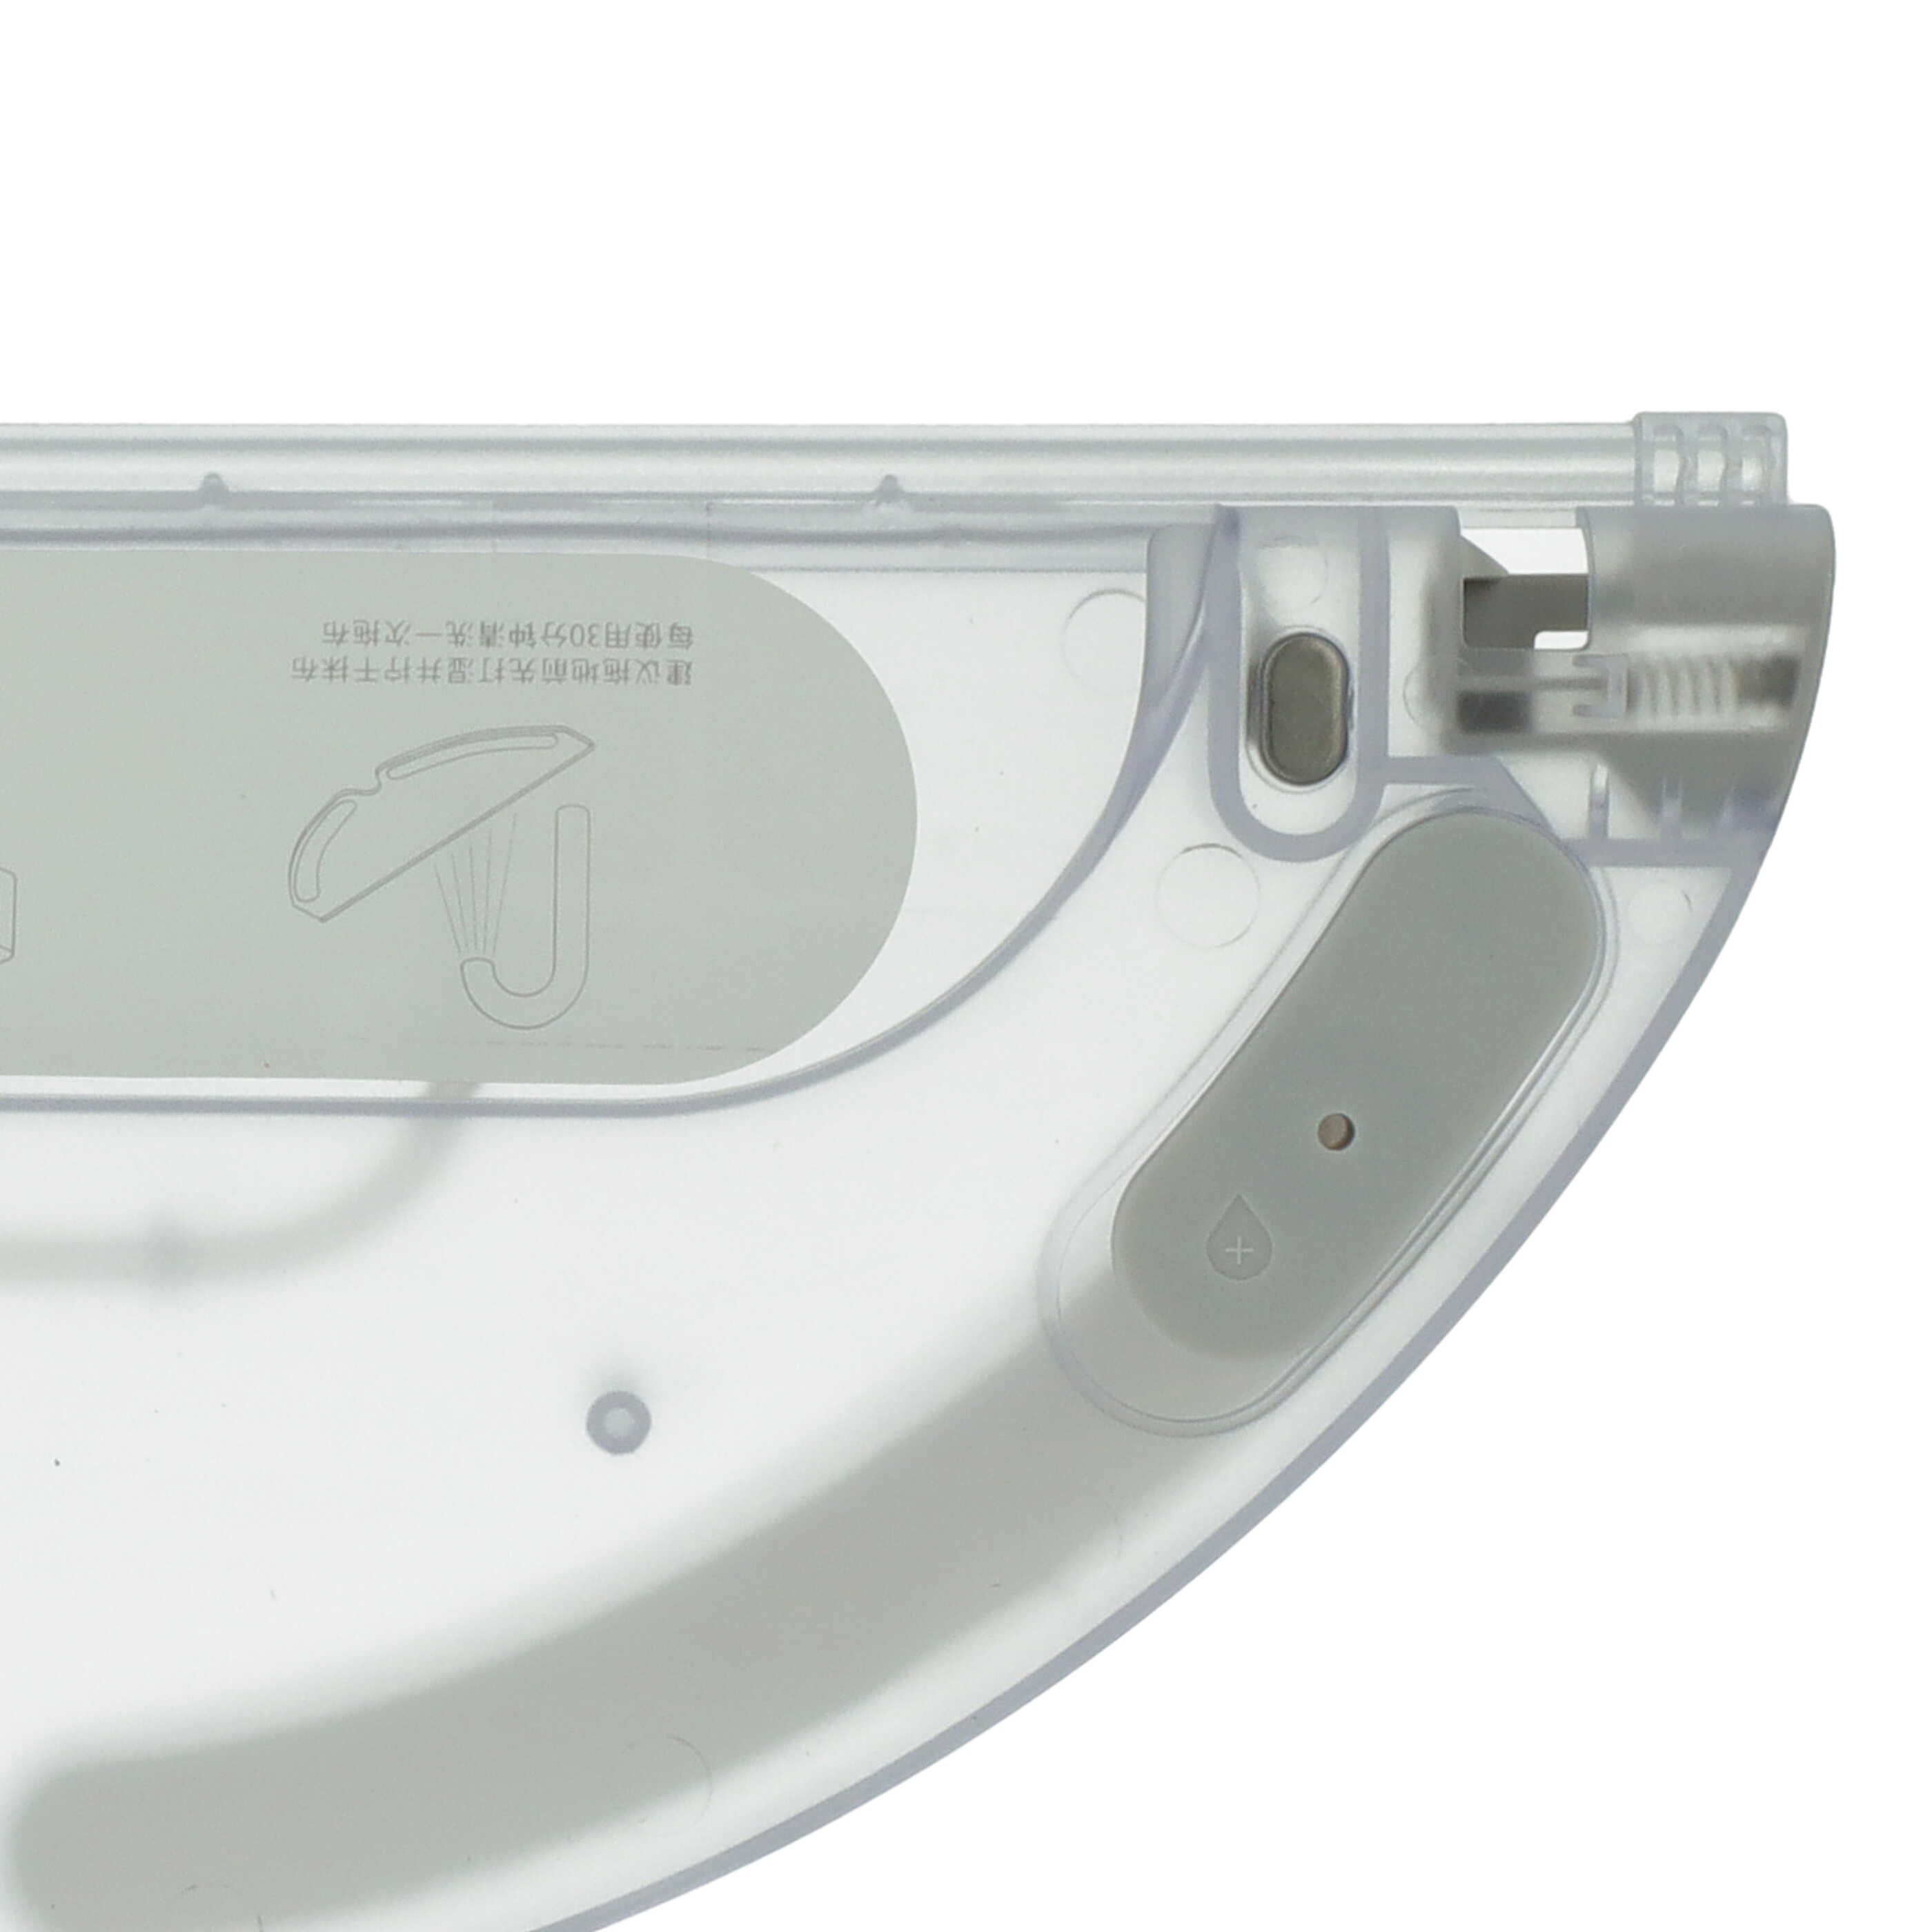 Soporte paño para robot aspirador Xiaomi Mijia 1C - 32,5 x 13,4 x 1,6 cm, 190 g transparente